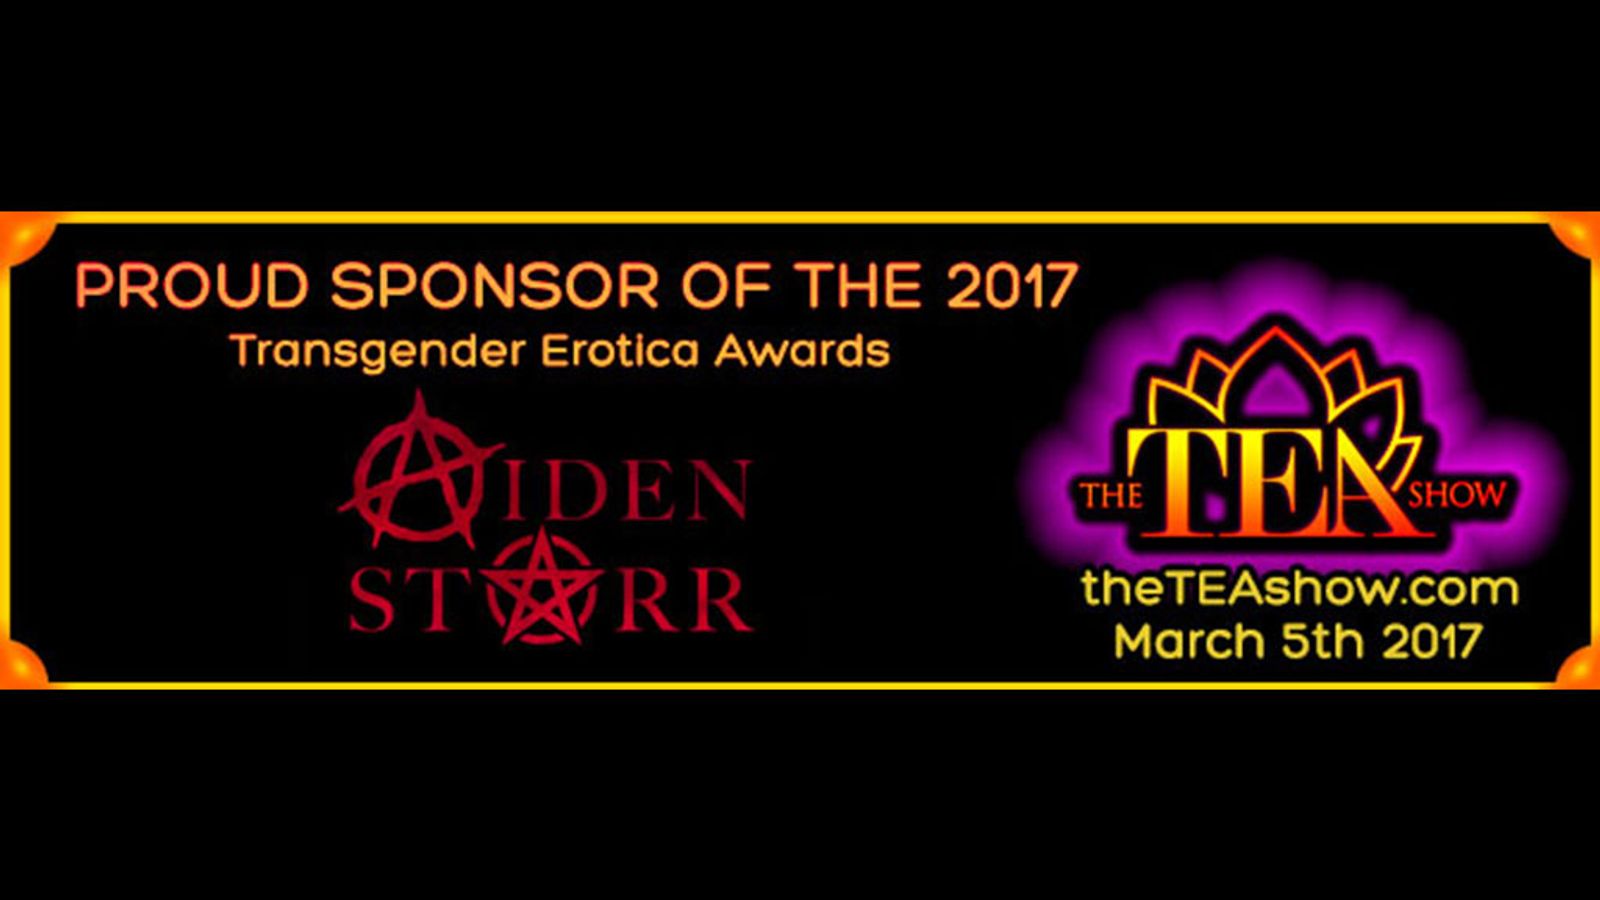 2017 TEAs Welcome Award-Winning Director Aiden Starr As Gold Sponsor